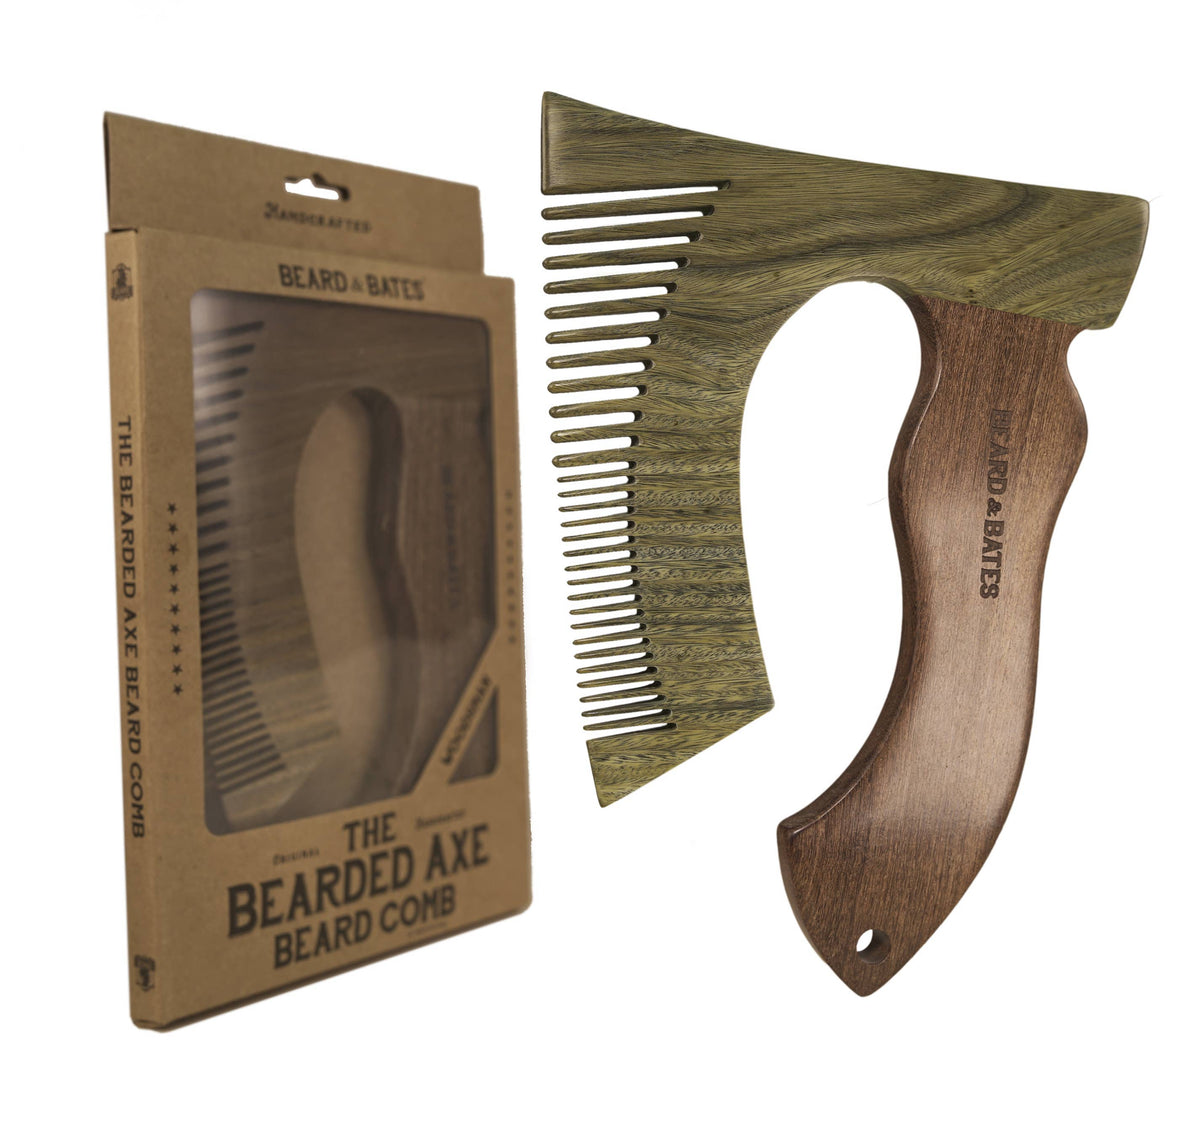 Beard &amp; Bates Hair care Beard Grooming Comb - Woodsman Axe